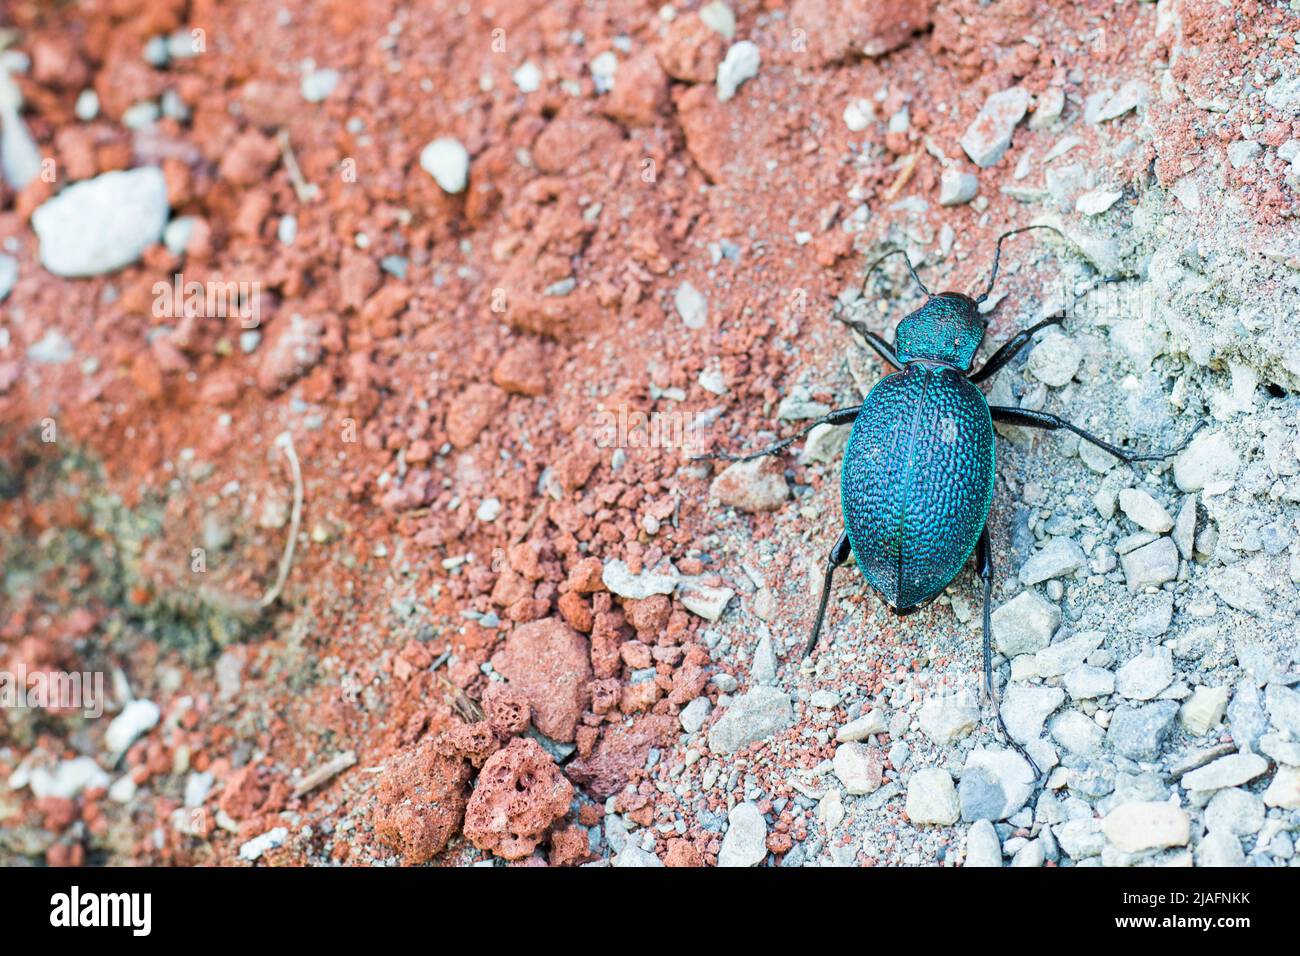 escarabajo de tierra azul, insecto de color azul Foto de stock